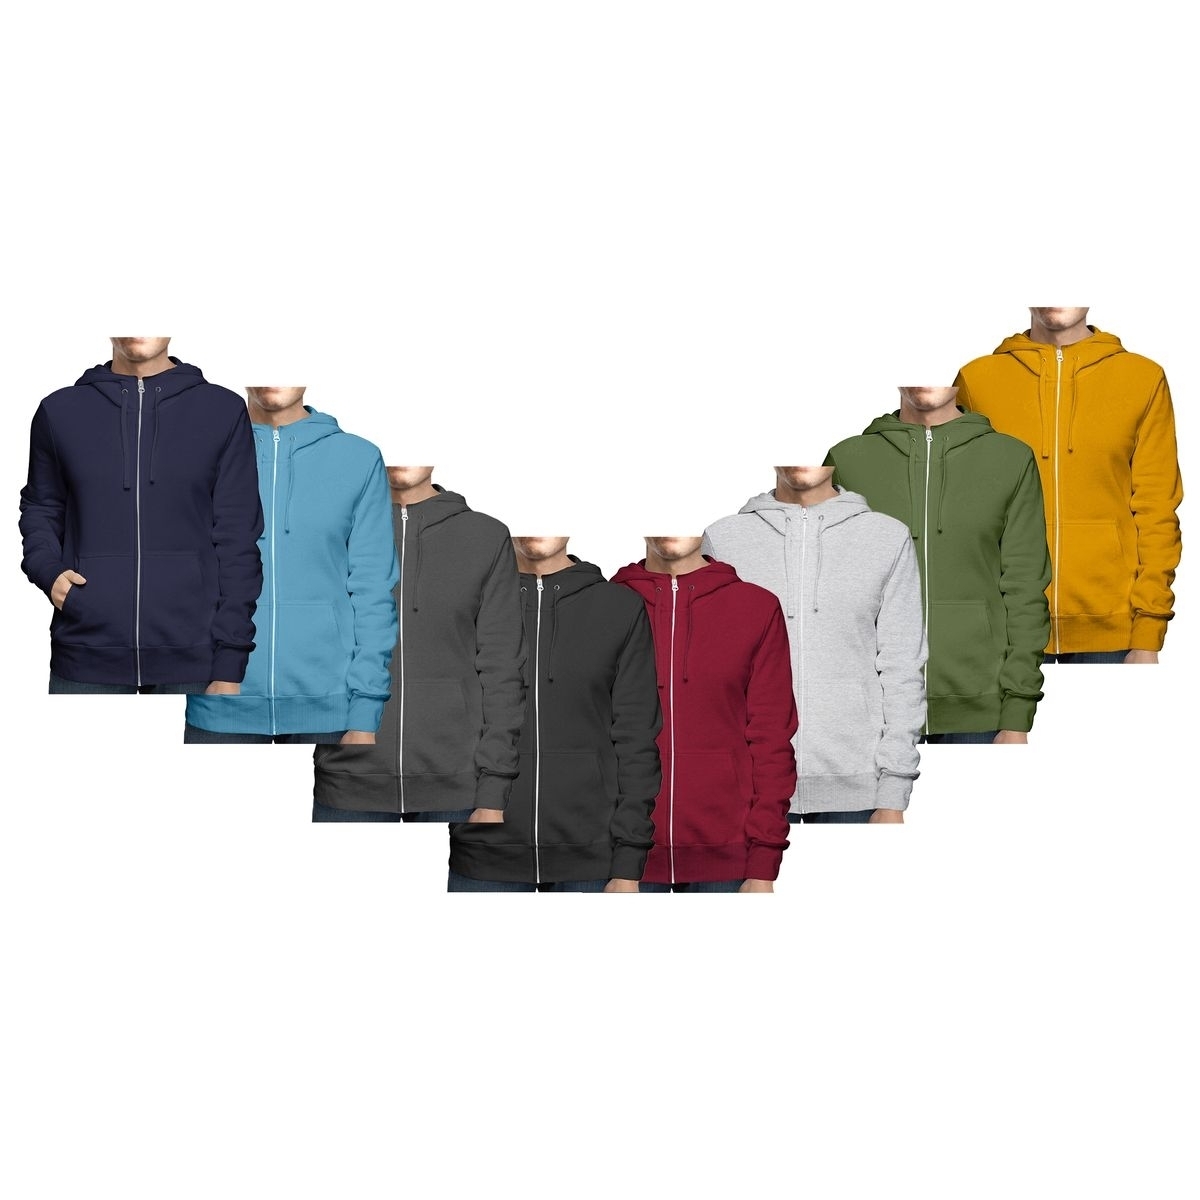 Men's Winter Warm Cozy Full Zip-Up Fleece Lined Soft Hoodie Sweatshirt - Navy, Xx-large